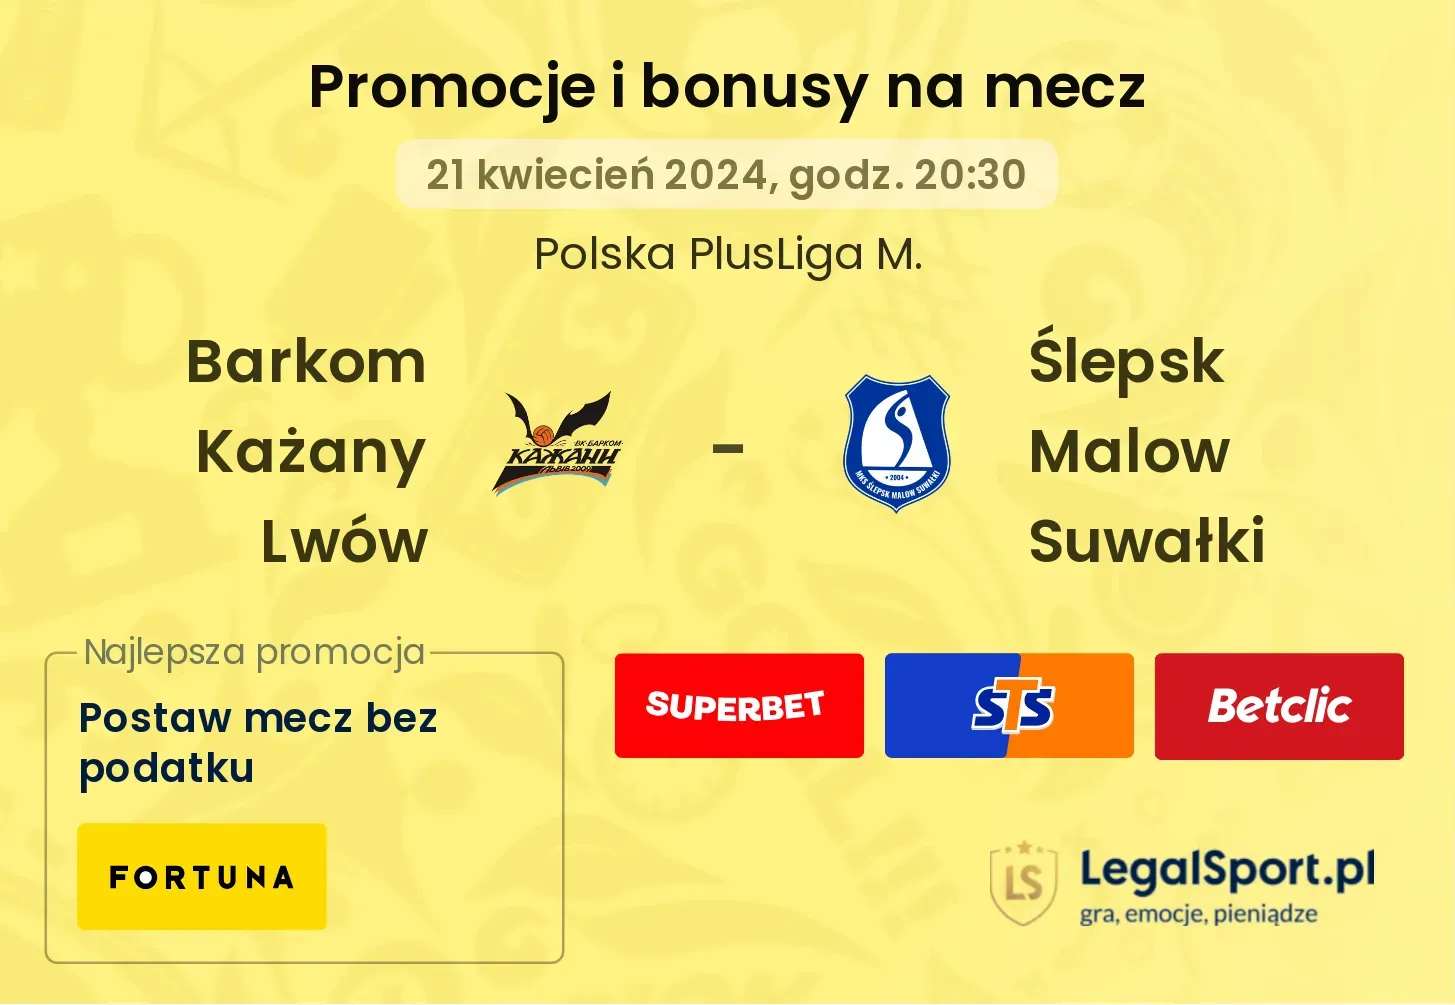 Barkom Każany Lwów - Ślepsk Malow Suwałki promocje bonusy na mecz